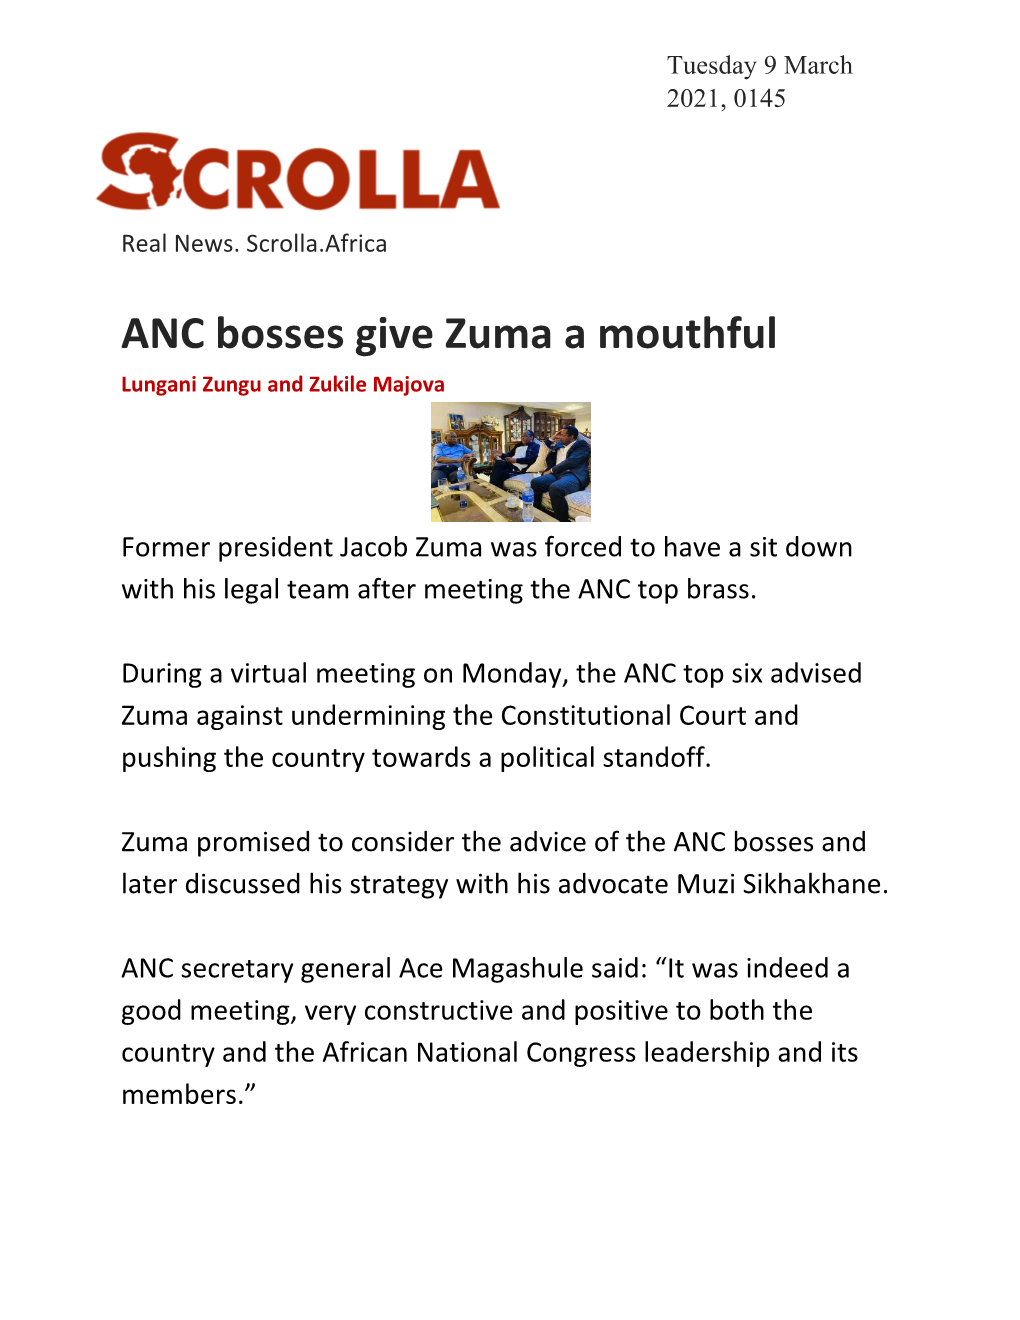 ANC Bosses Give Zuma a Mouthful Lungani Zungu and Zukile Majova